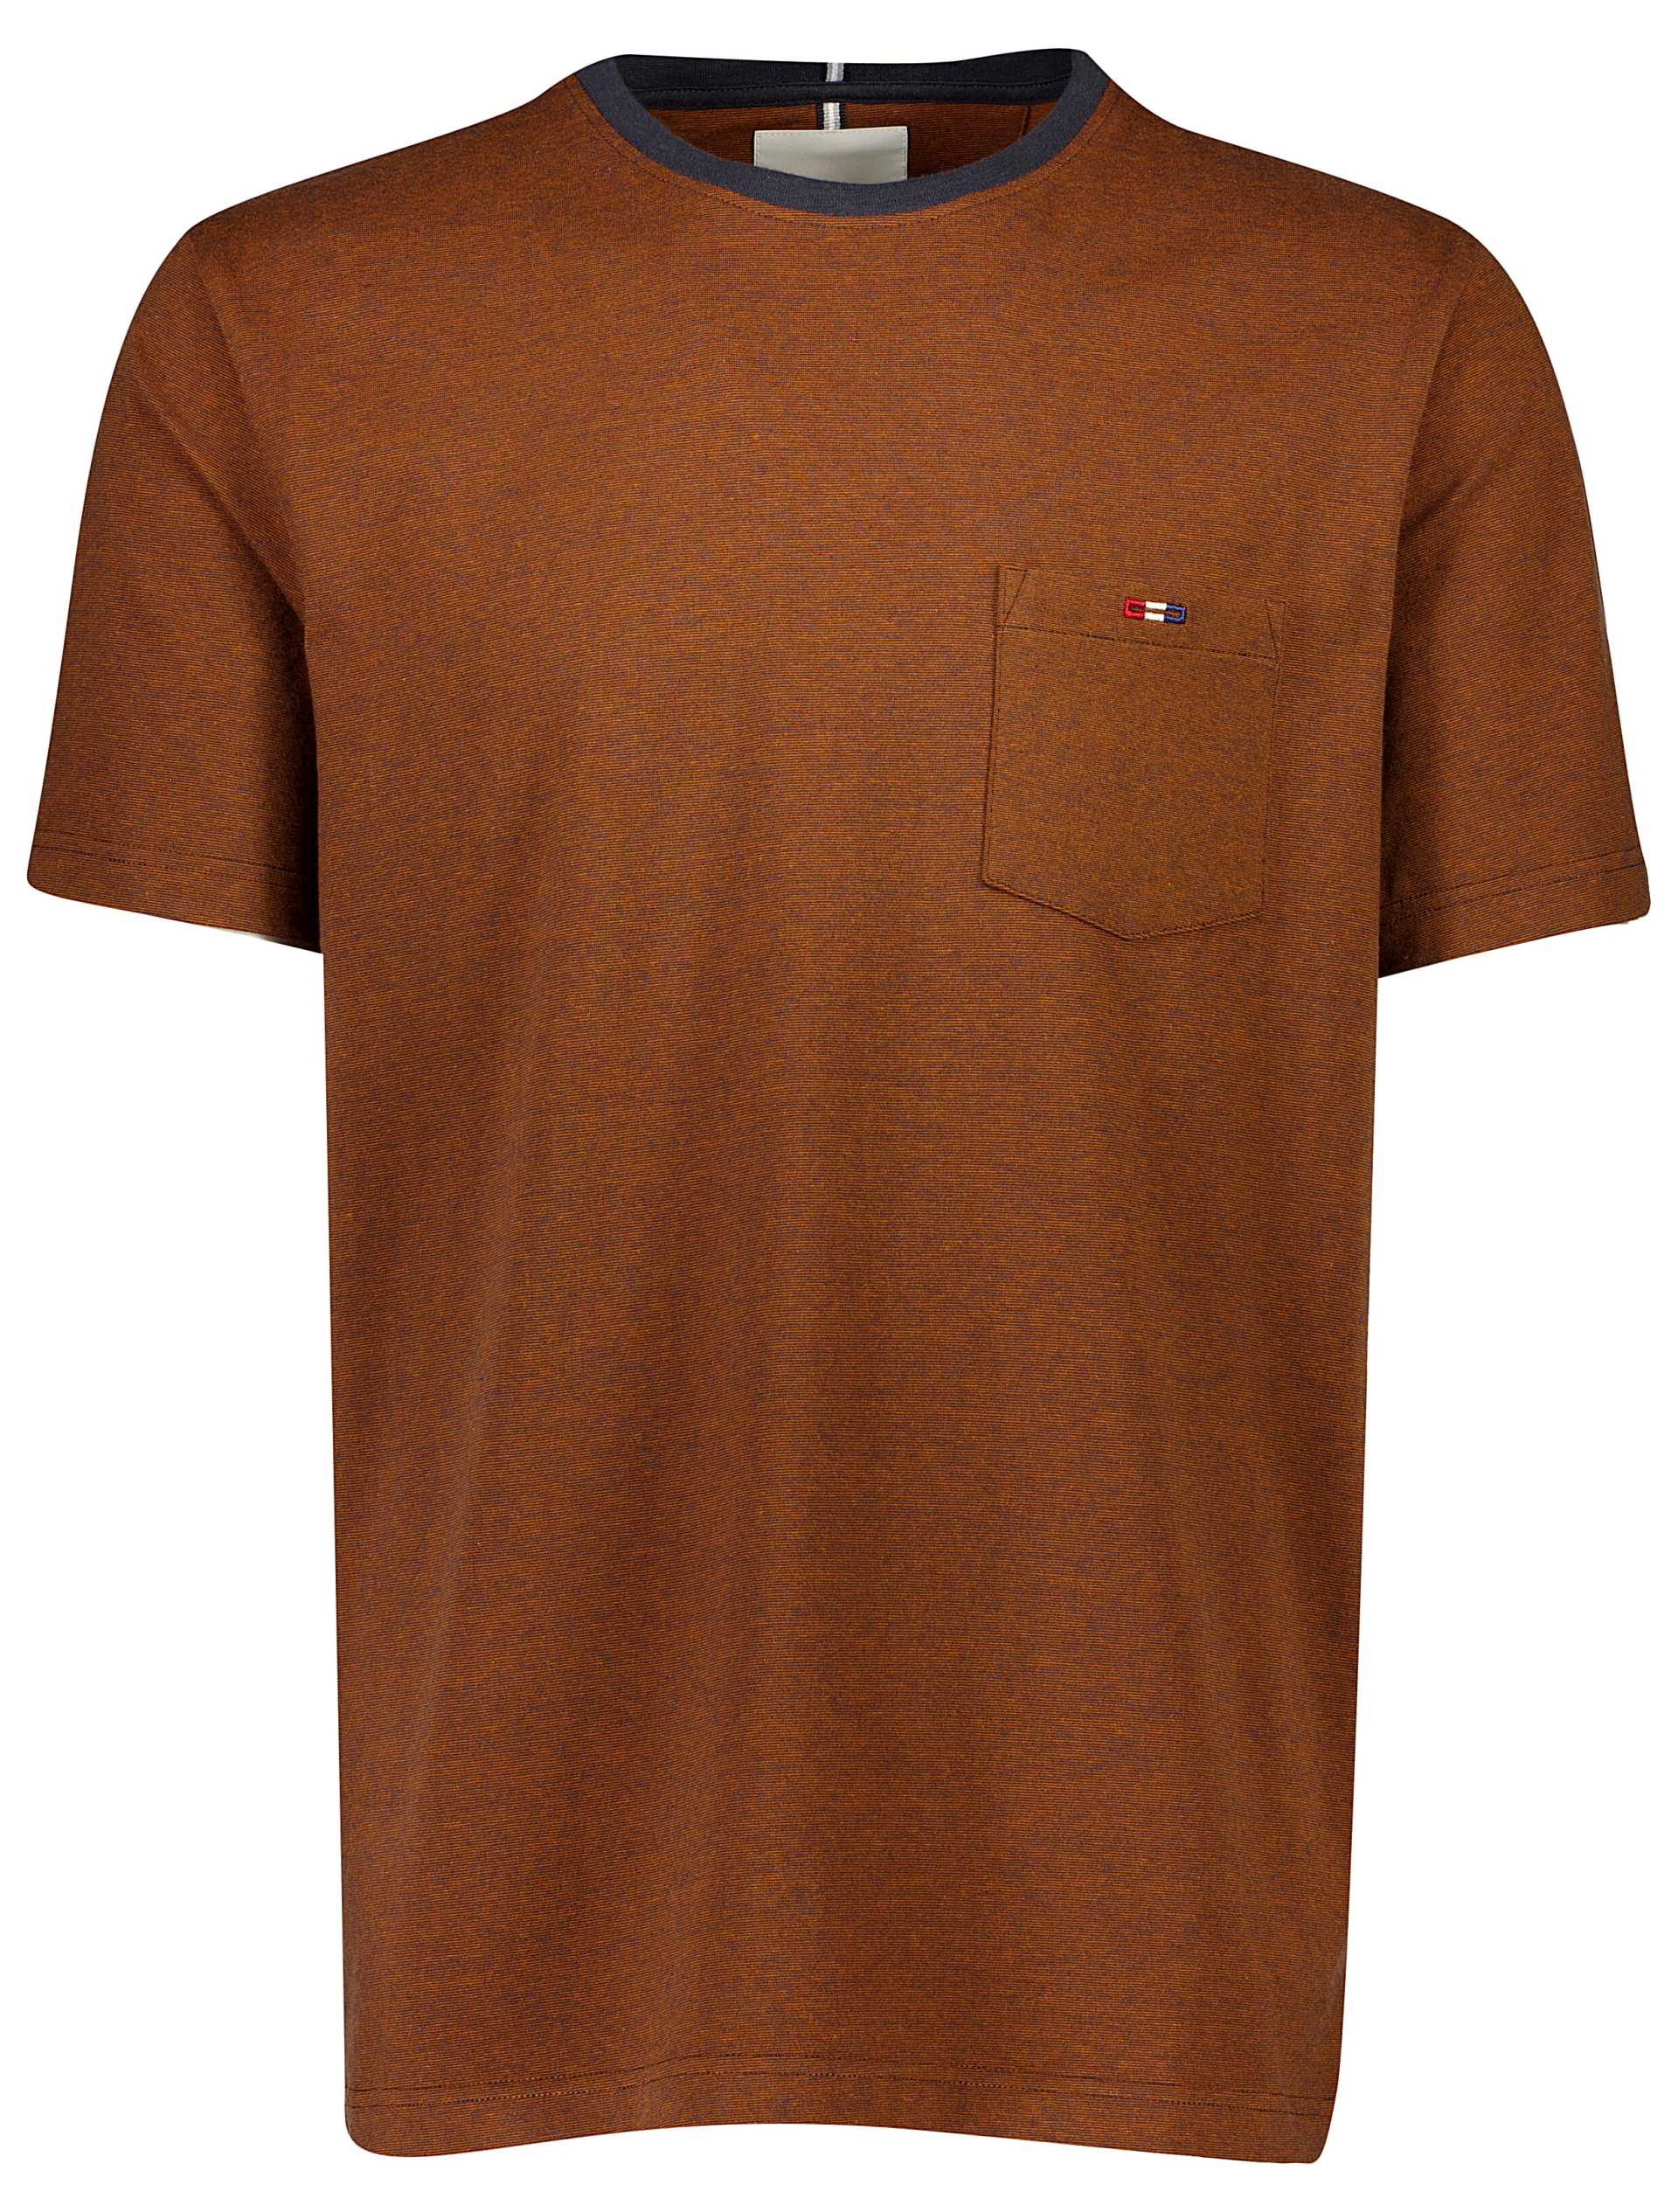 Bison T-shirt orange / golden orange